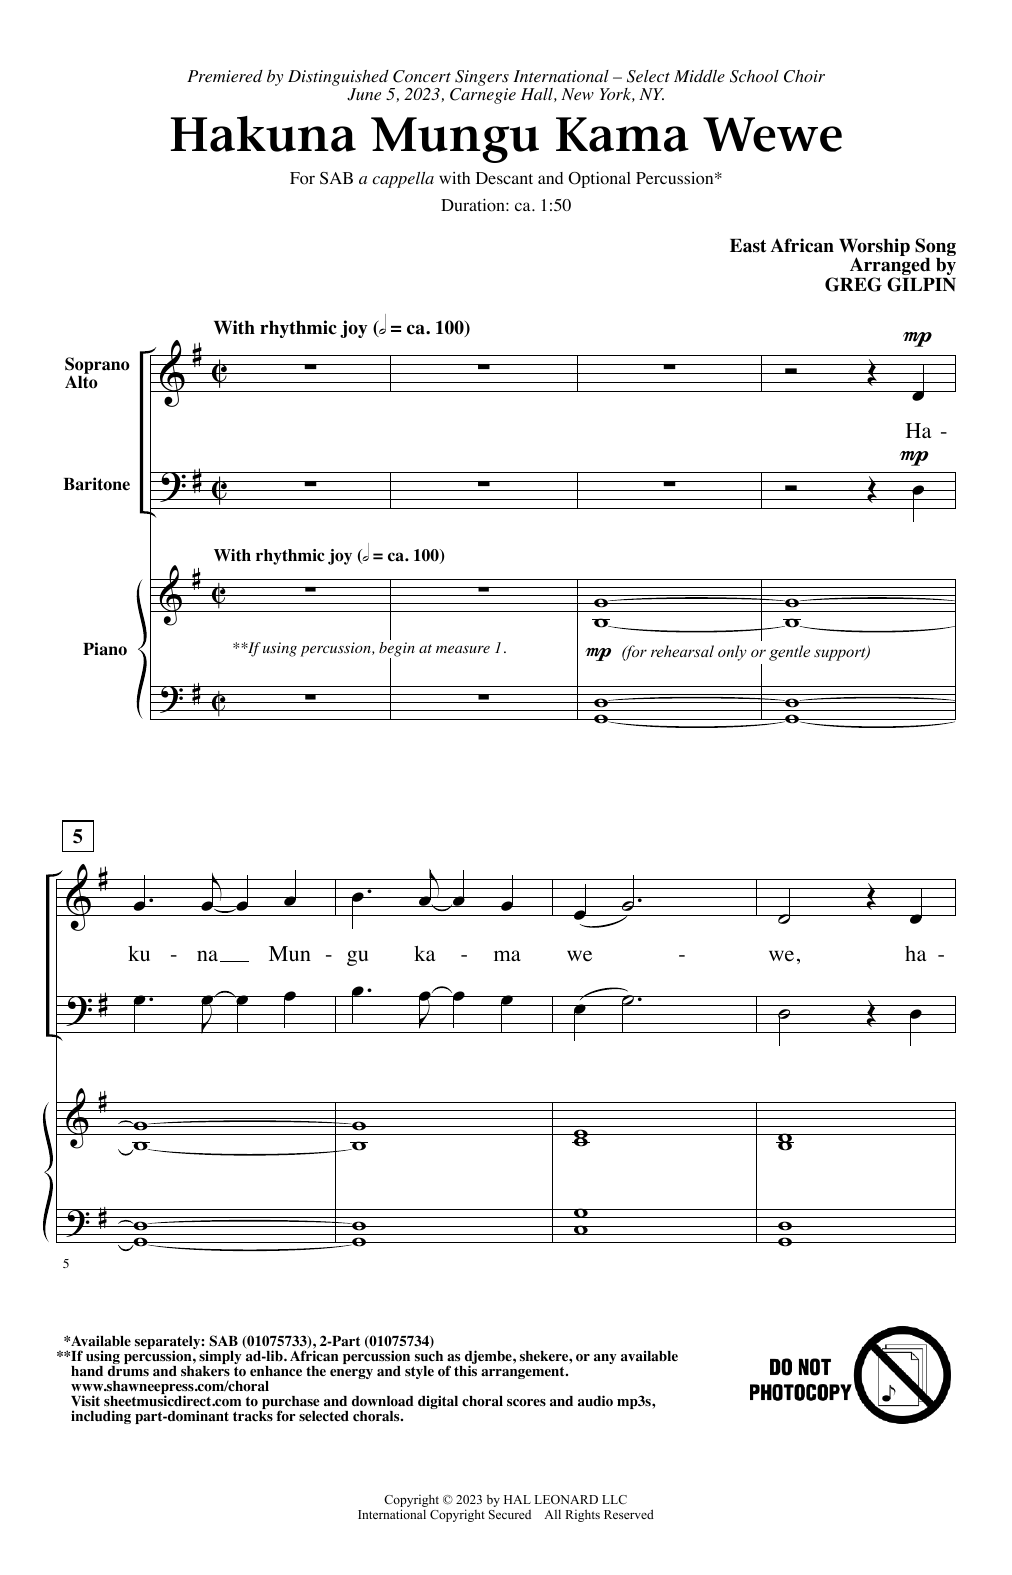 Greg Gilpin Hakuna Mungu Kama Wewe Sheet Music Notes & Chords for SAB Choir - Download or Print PDF